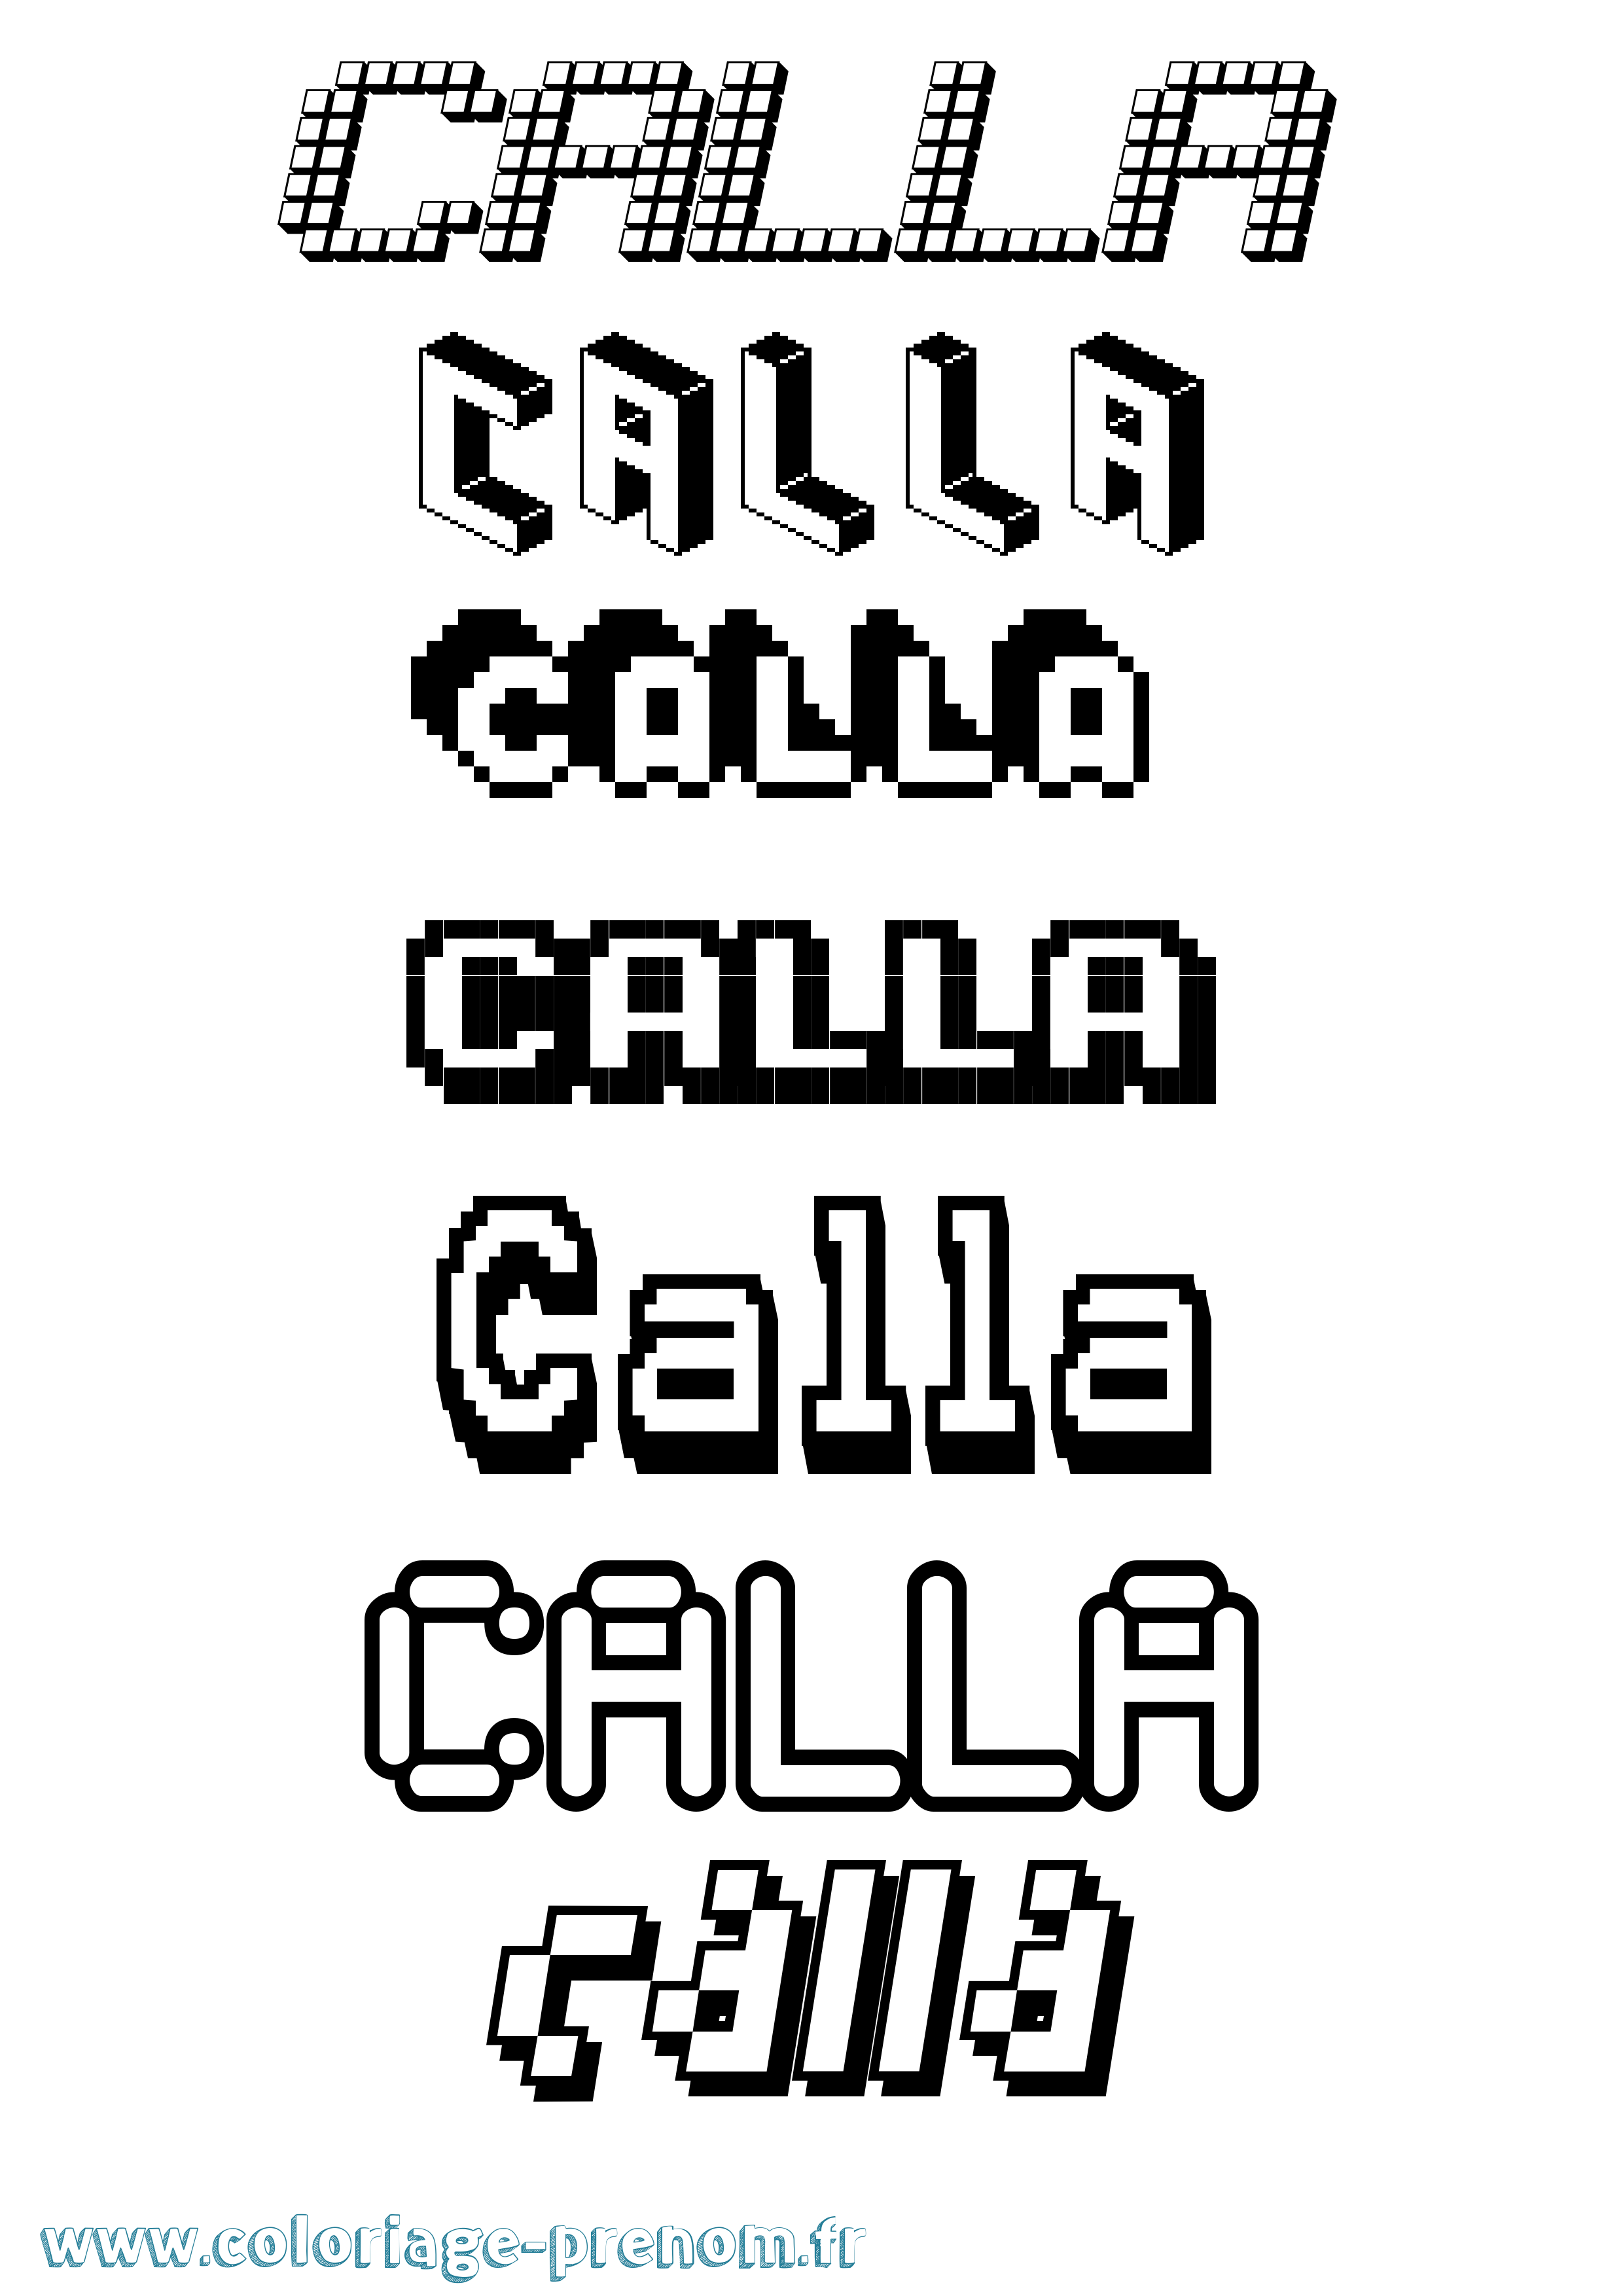 Coloriage prénom Calla Pixel